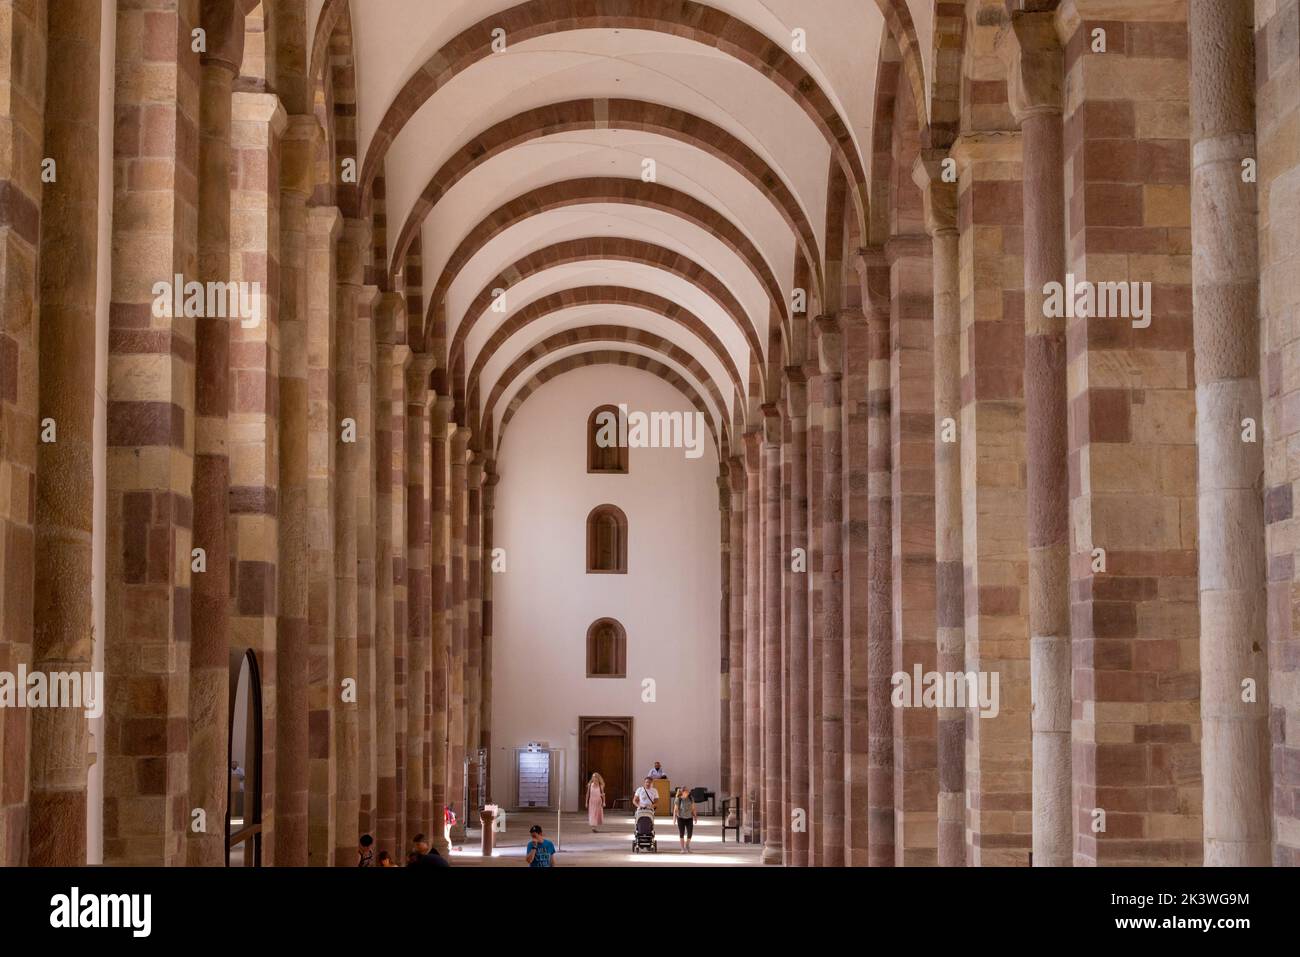 Pasillo lateral, Catedral de Speyer, Speyer, Alemania Foto de stock